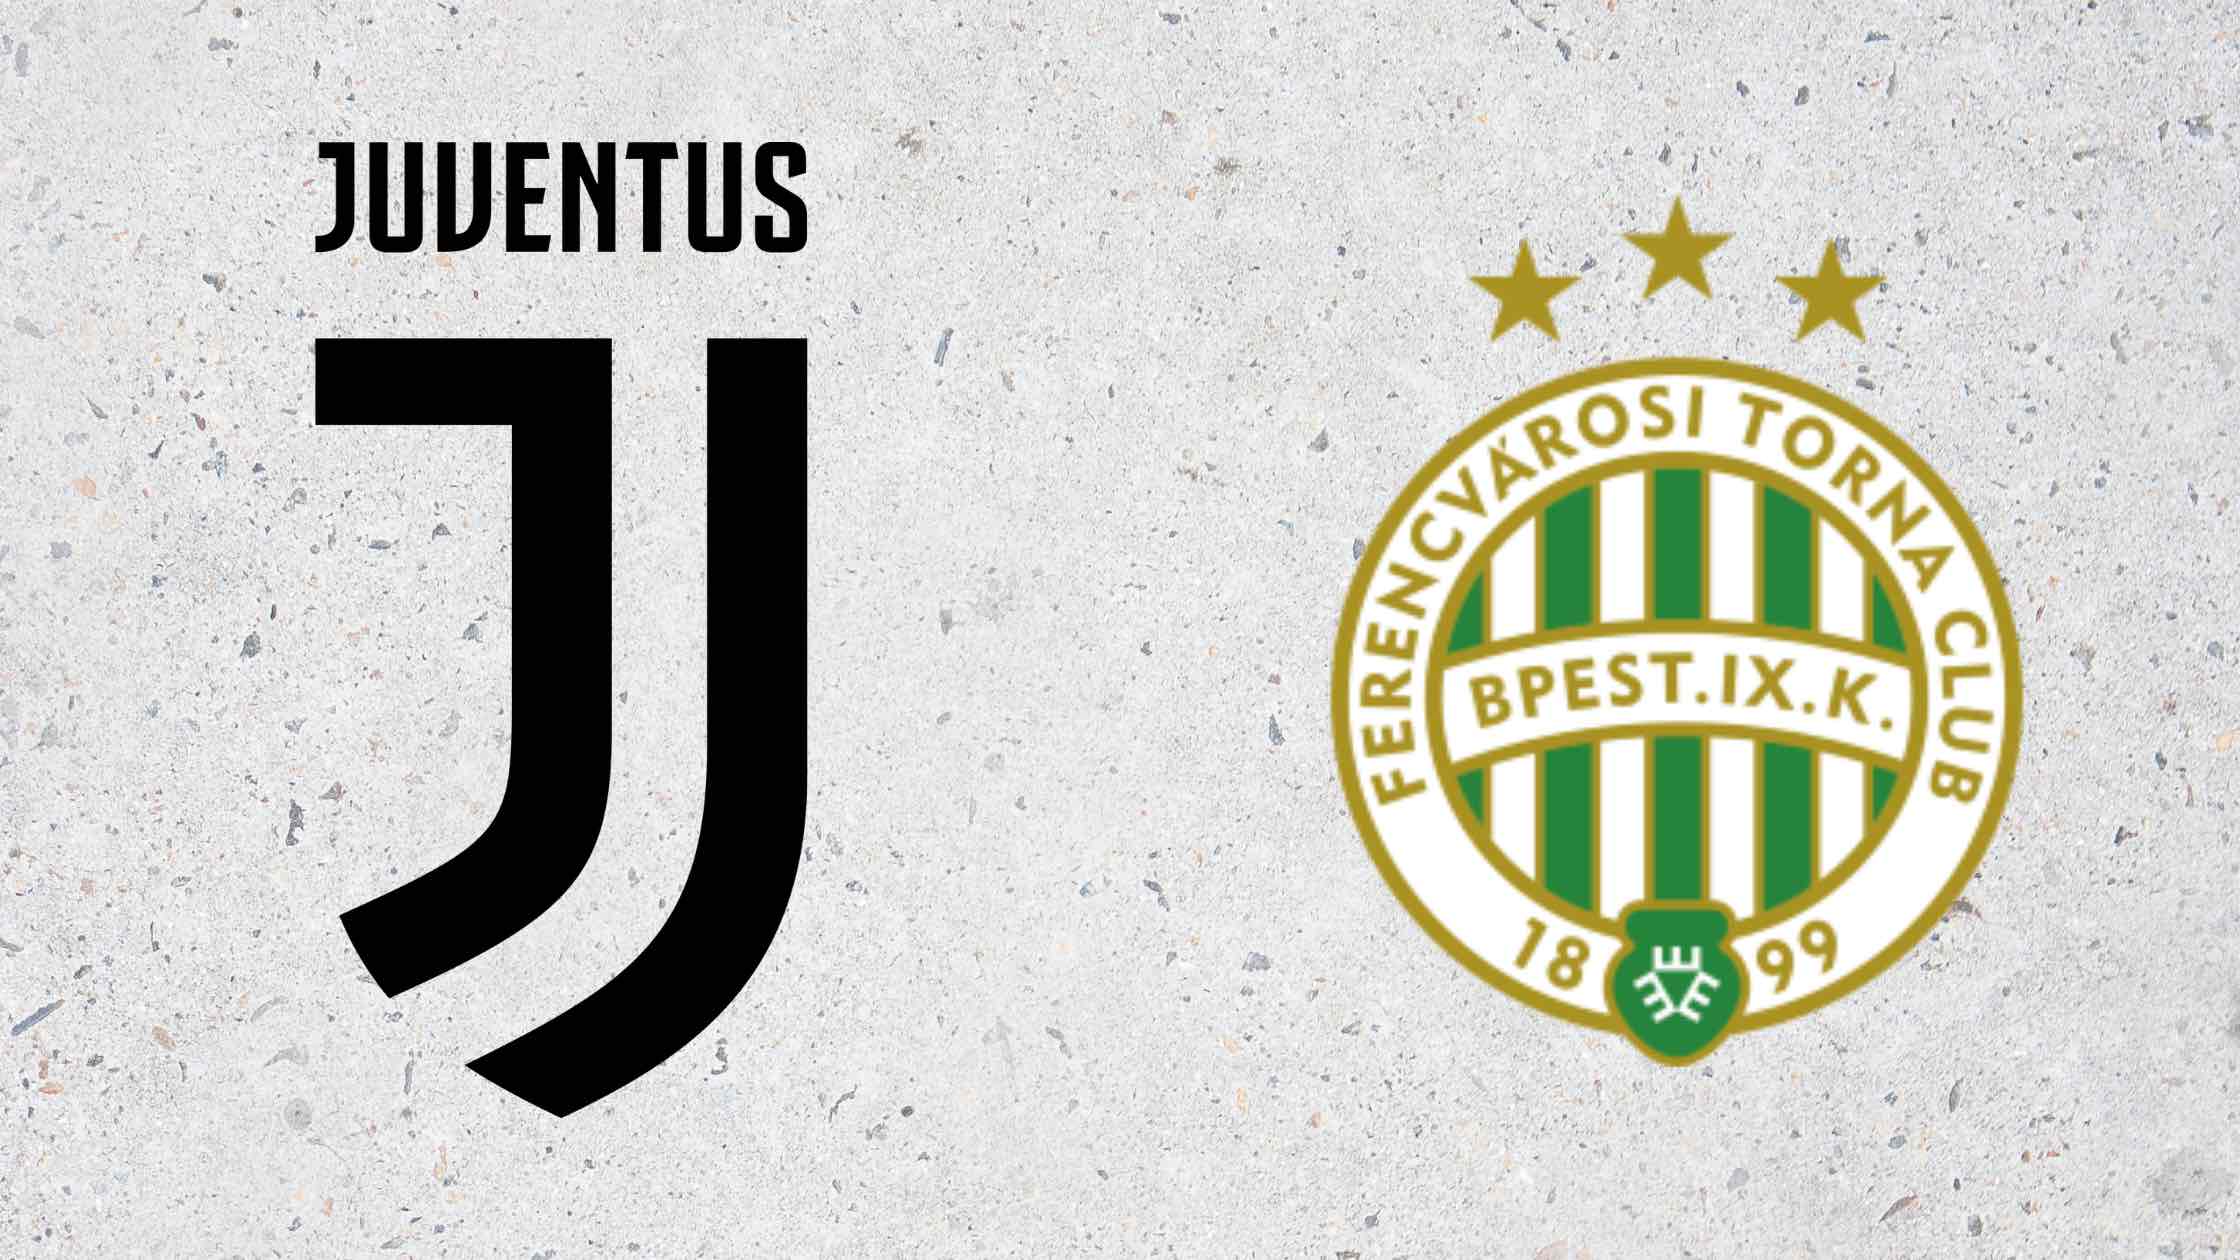 Creator of Juventus logo Designer